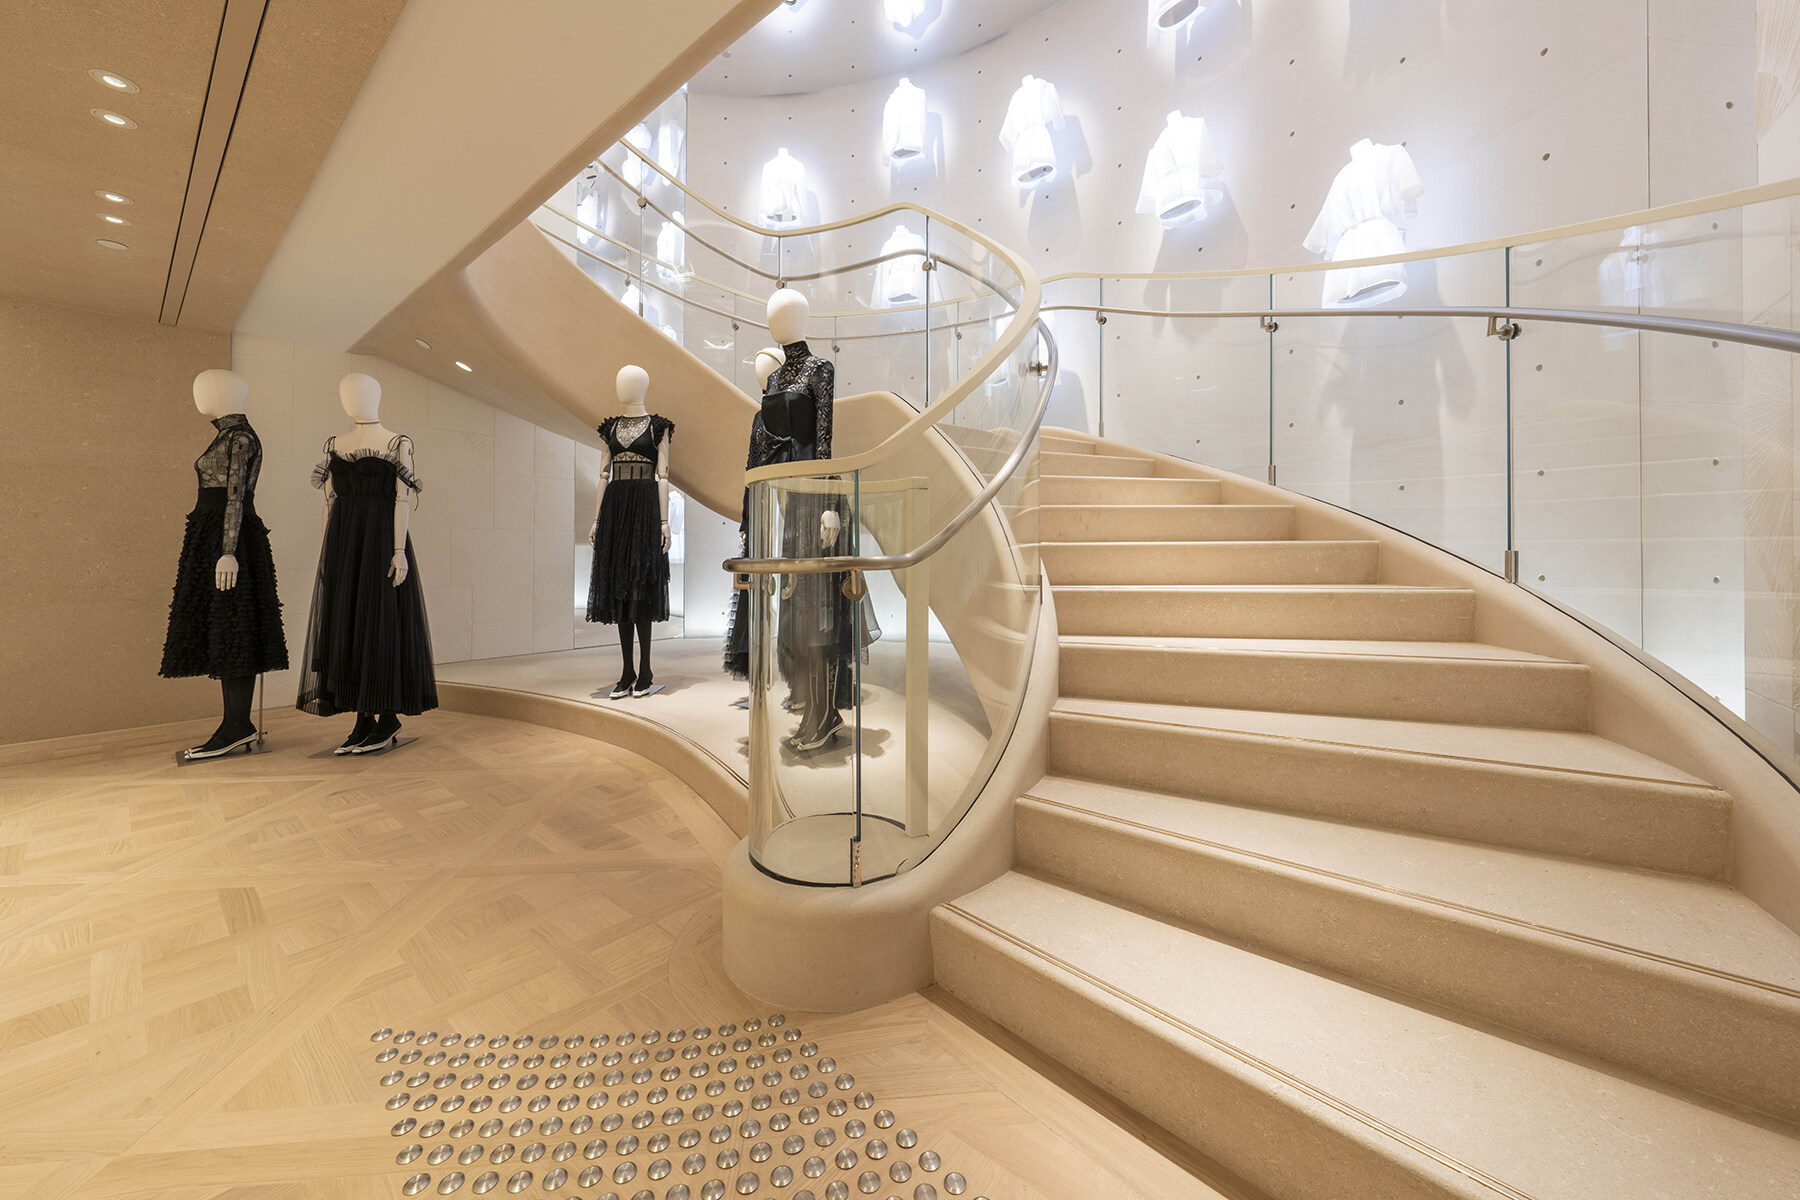 店內裝潢糅合品牌源自巴黎的典雅傳統以及雋永的現代風格。